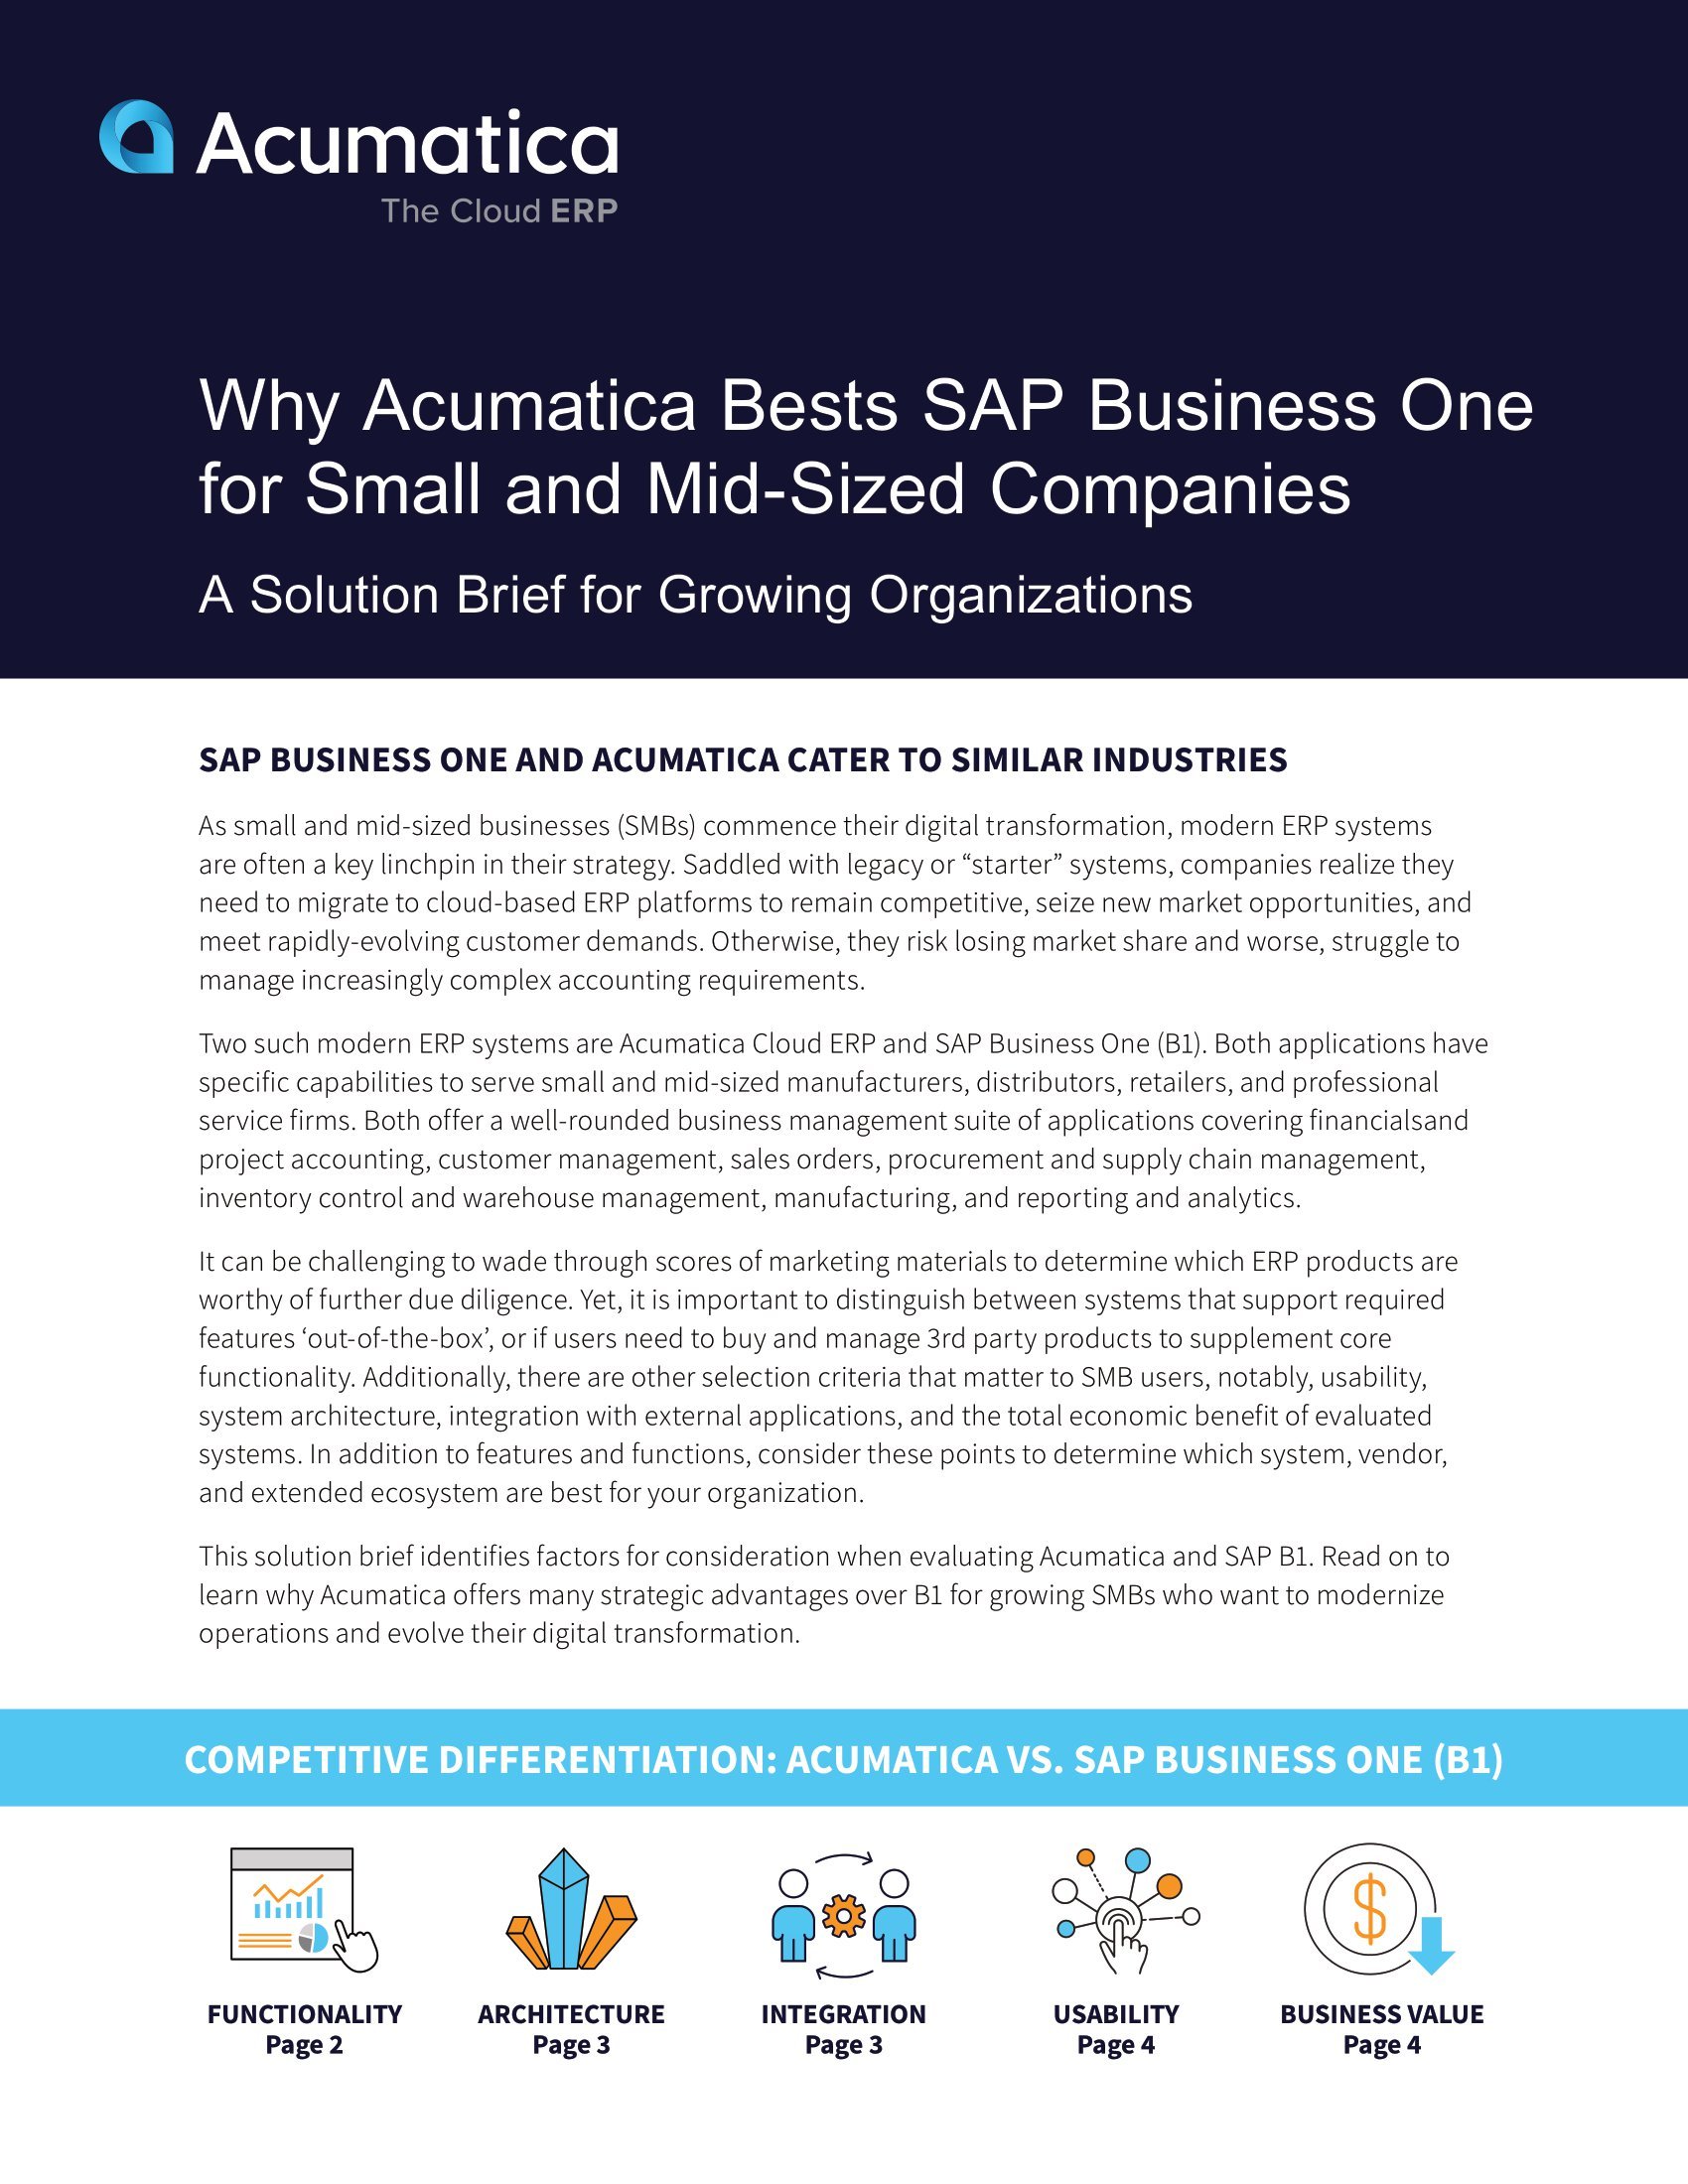 Comparer Acumatica à SAP Business One